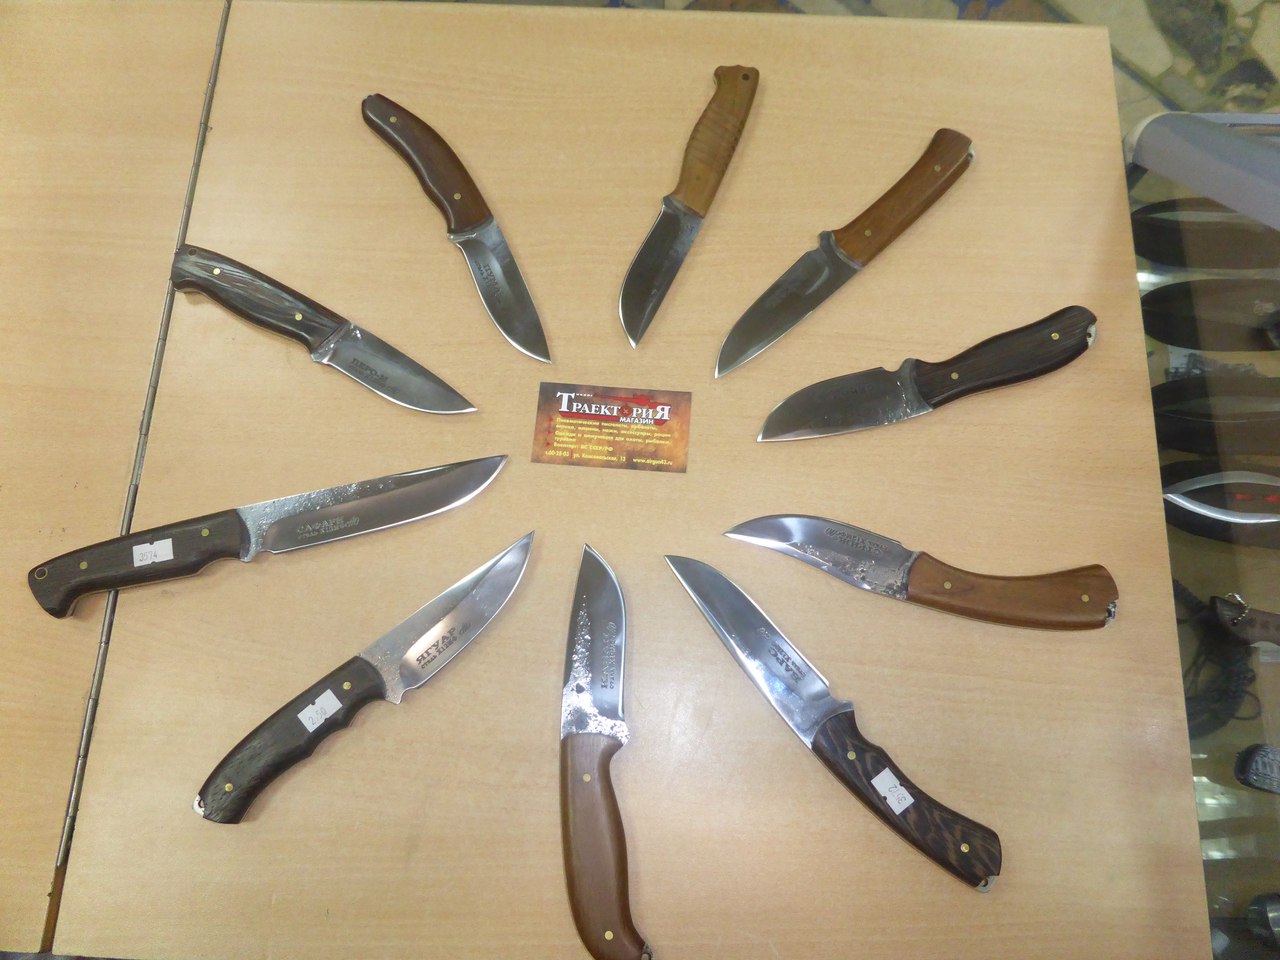 Дагестанские ножи в магазине "Траектория" на Комсомольской в Кирове